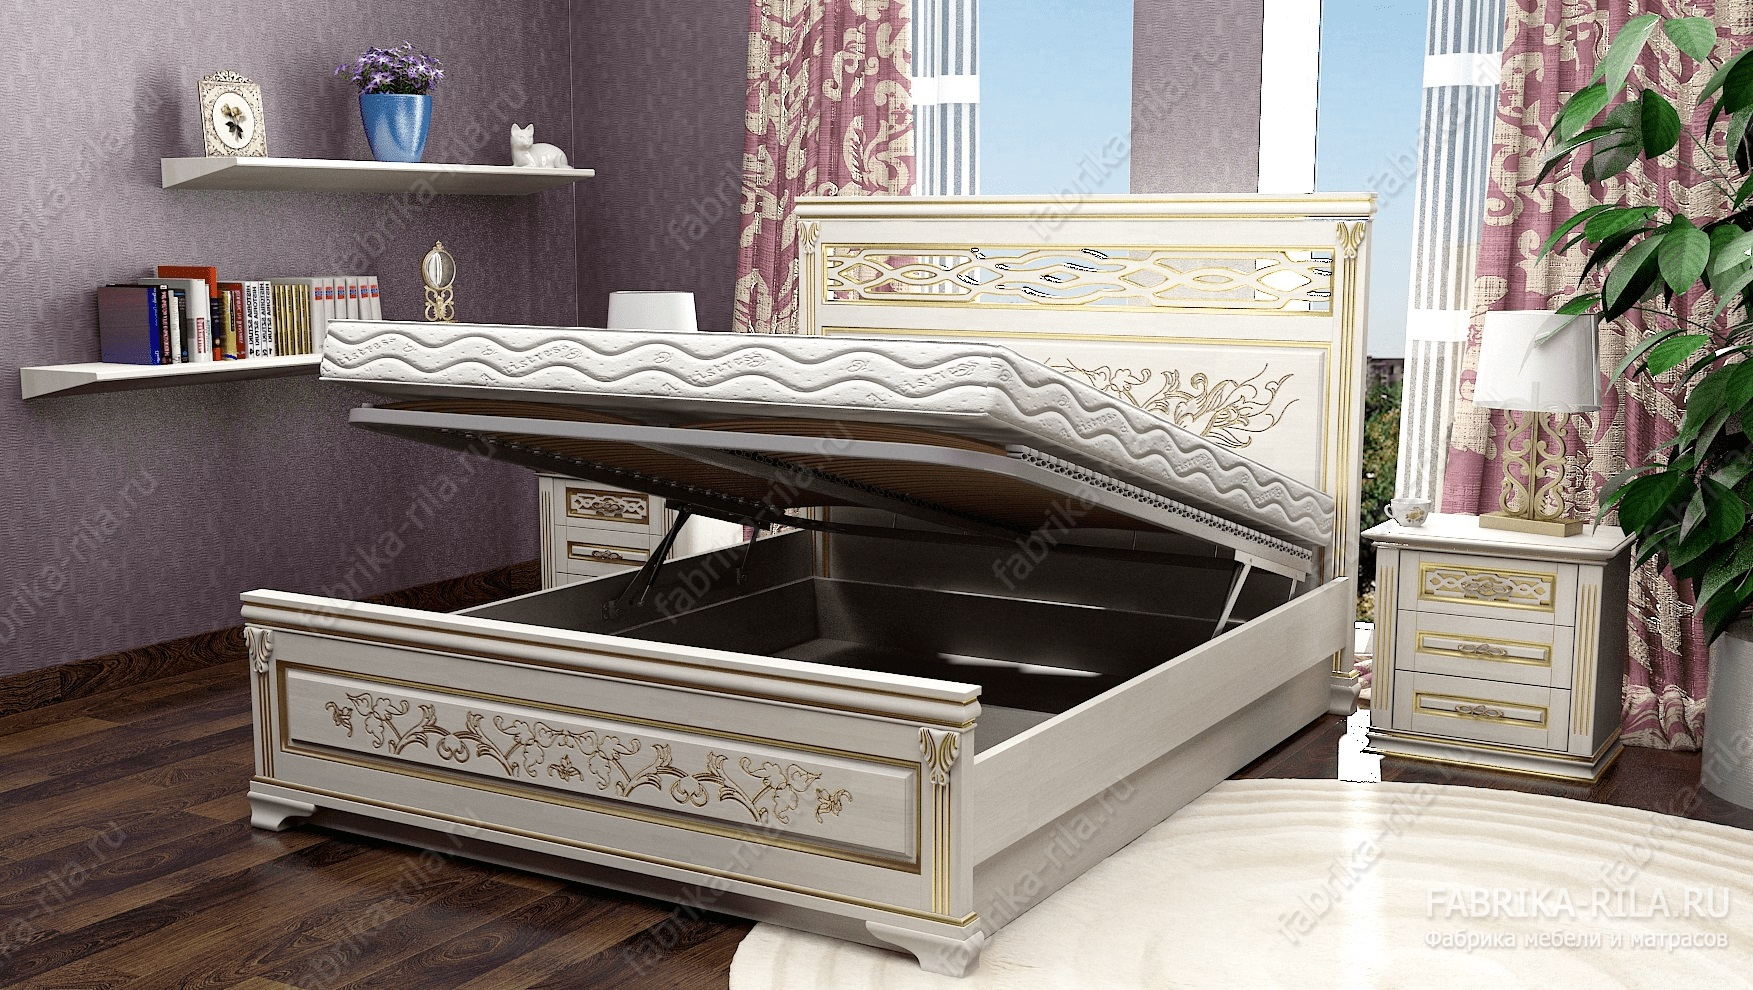 Кровать Lirоna 3 — 180x190 см. из сосны